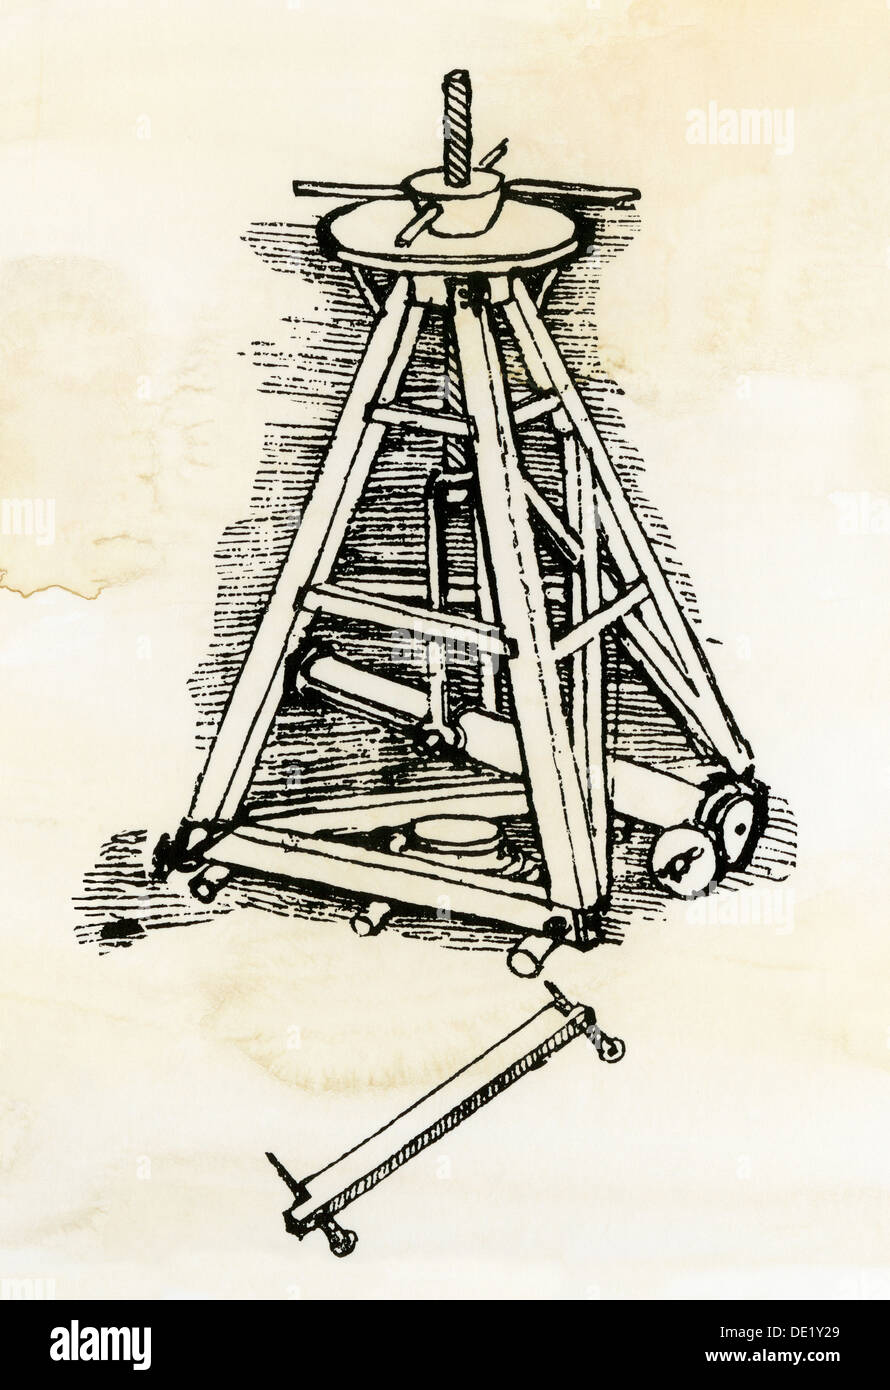 Croquis de Léonard de Vinci pour une machine de levage en colonnes en pierre ou en position. Gravure sur bois avec un lavage à l'aquarelle Banque D'Images